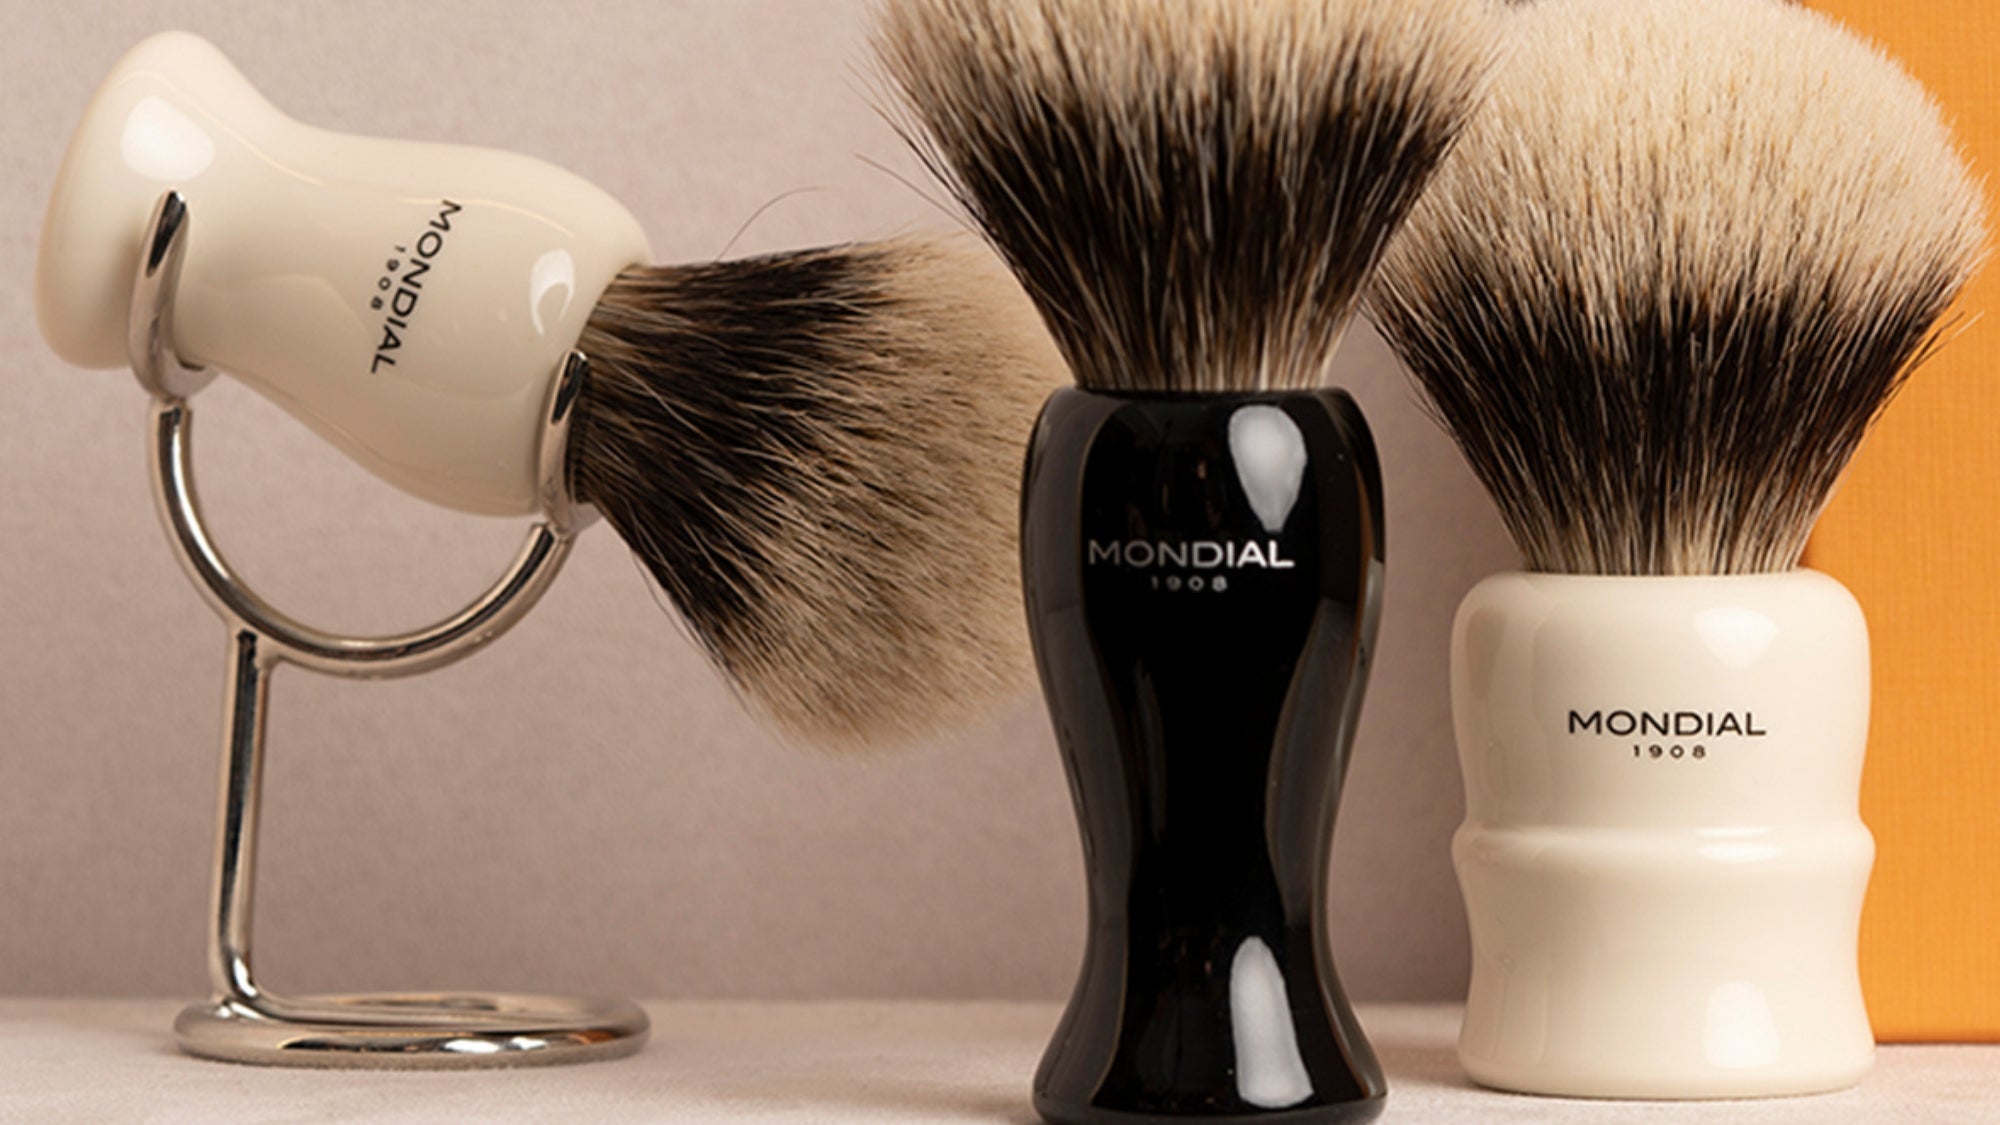 The Axolute Collection from 1908 1908 Mondial Mondial Shaving – EU